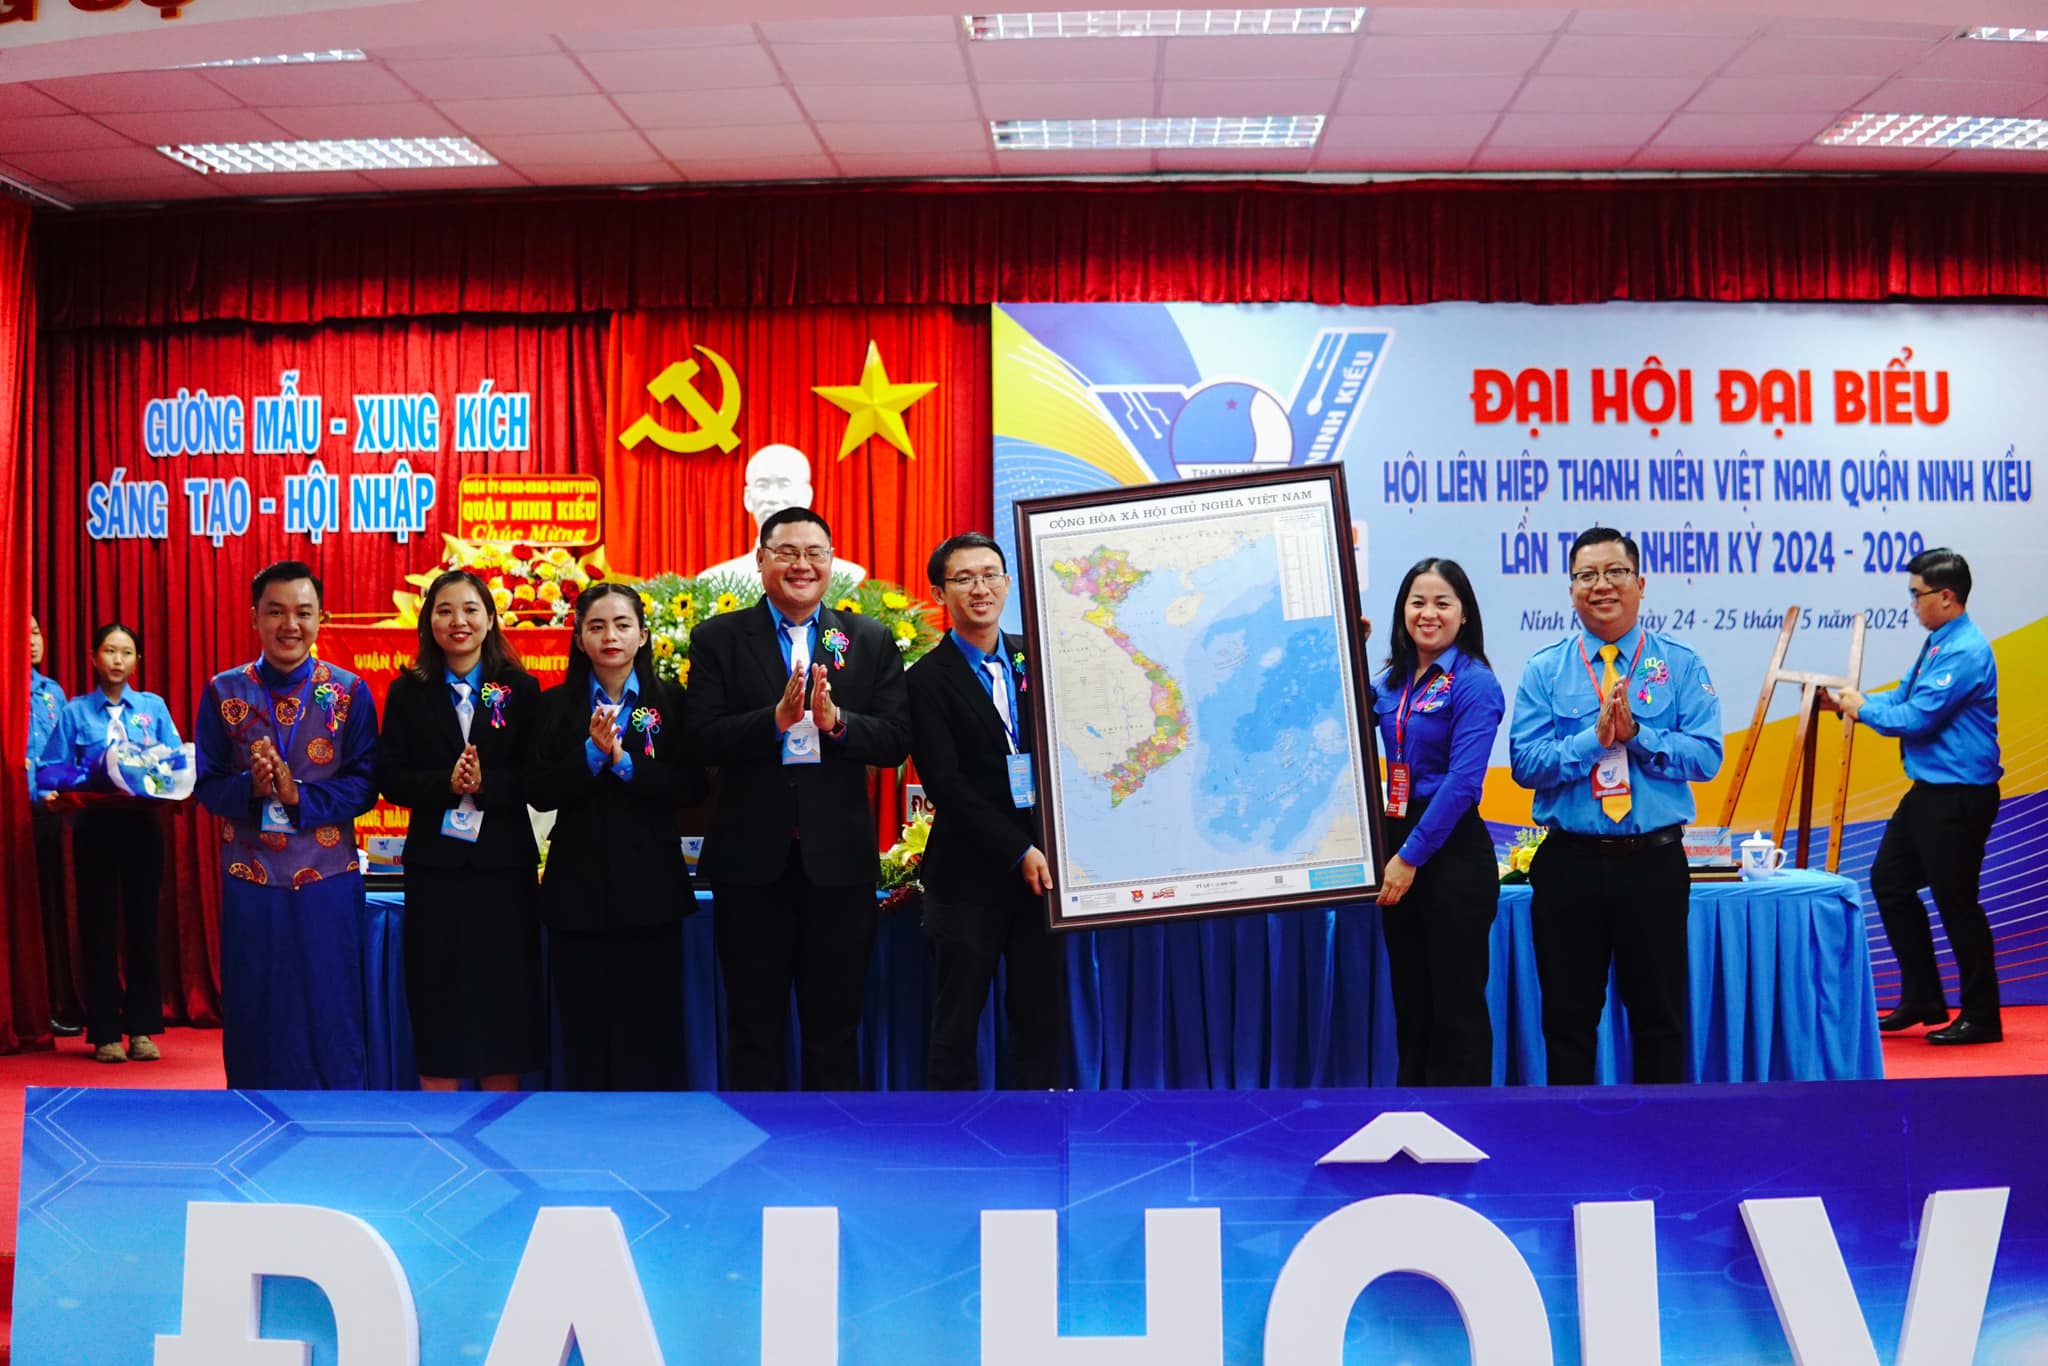 A02: Lãnh đạo thành phố và quận Ninh Kiều chúc mừng Đại hội